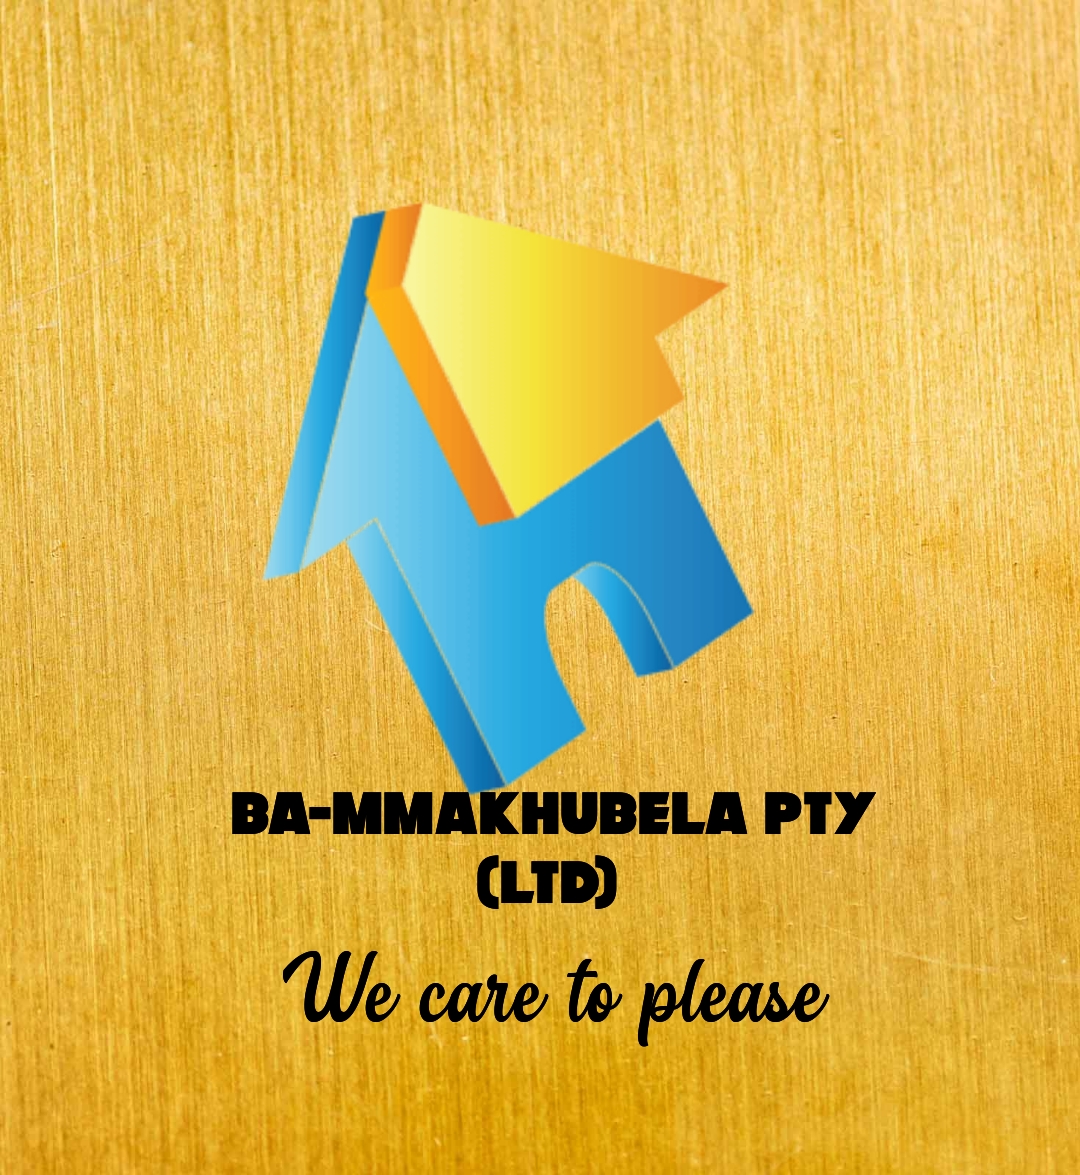 Ba Mmakubela trading enterprise